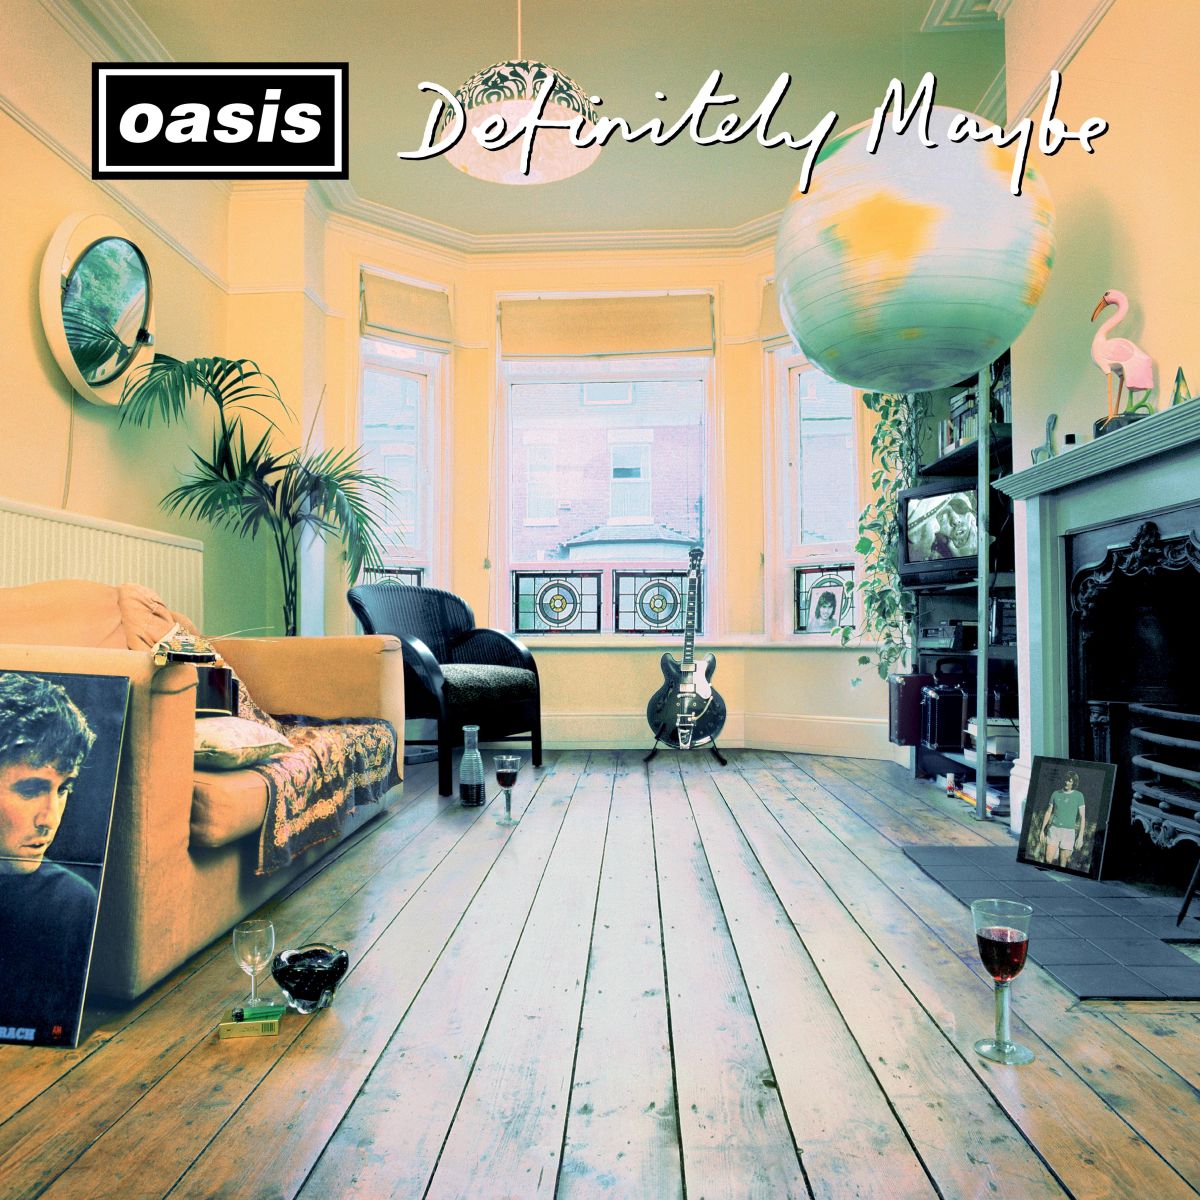 L’iconico album di debutto “Definitely Maybe” degli Oasis compie 30 anni!